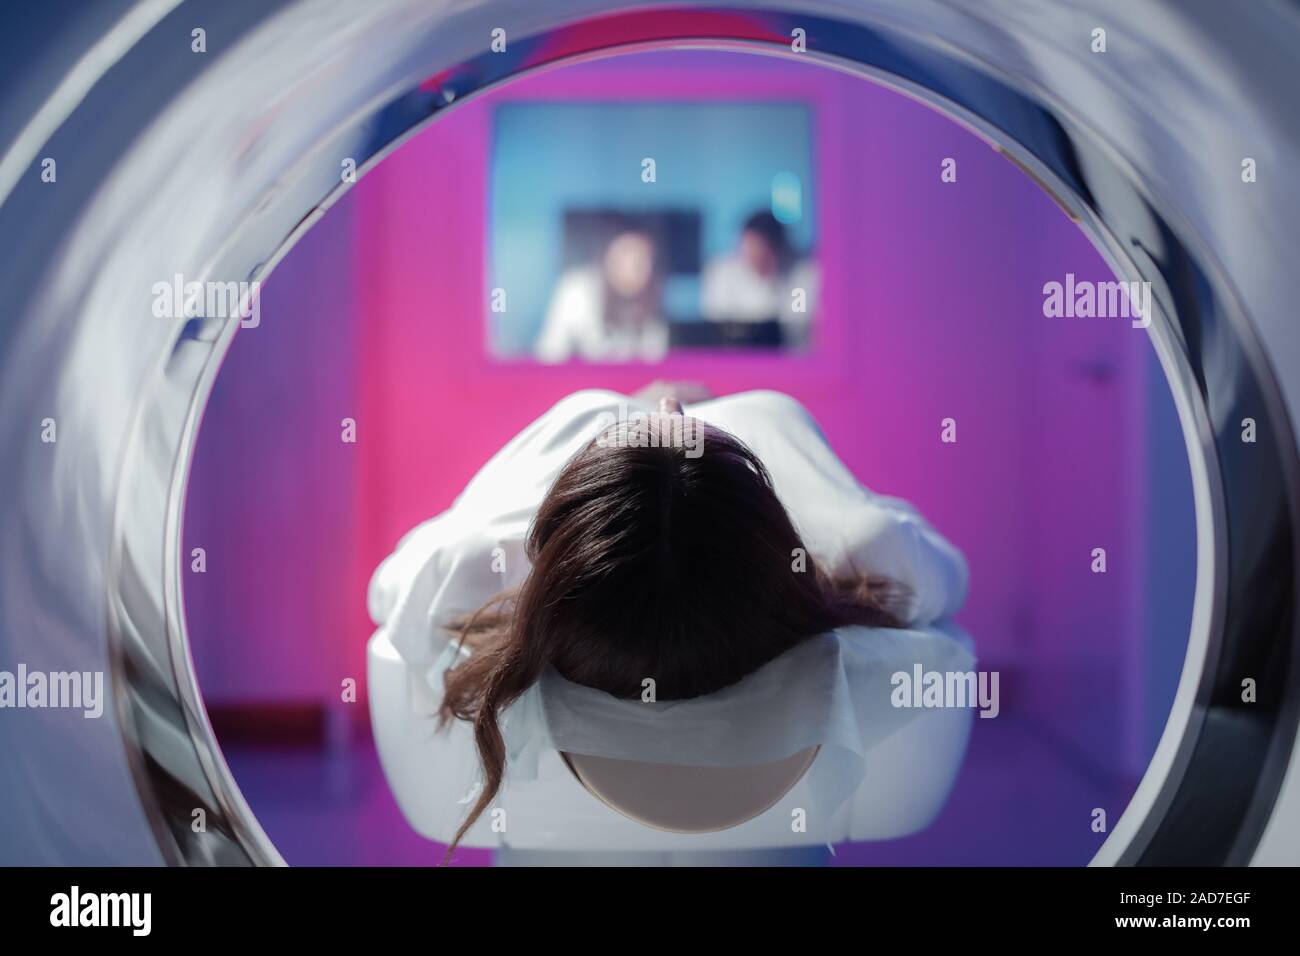 La jeune fille patient est allongé dans le tomographe et en attente d'une numérisation. Trois médecins de la salle d'examen regarder les photos Banque D'Images